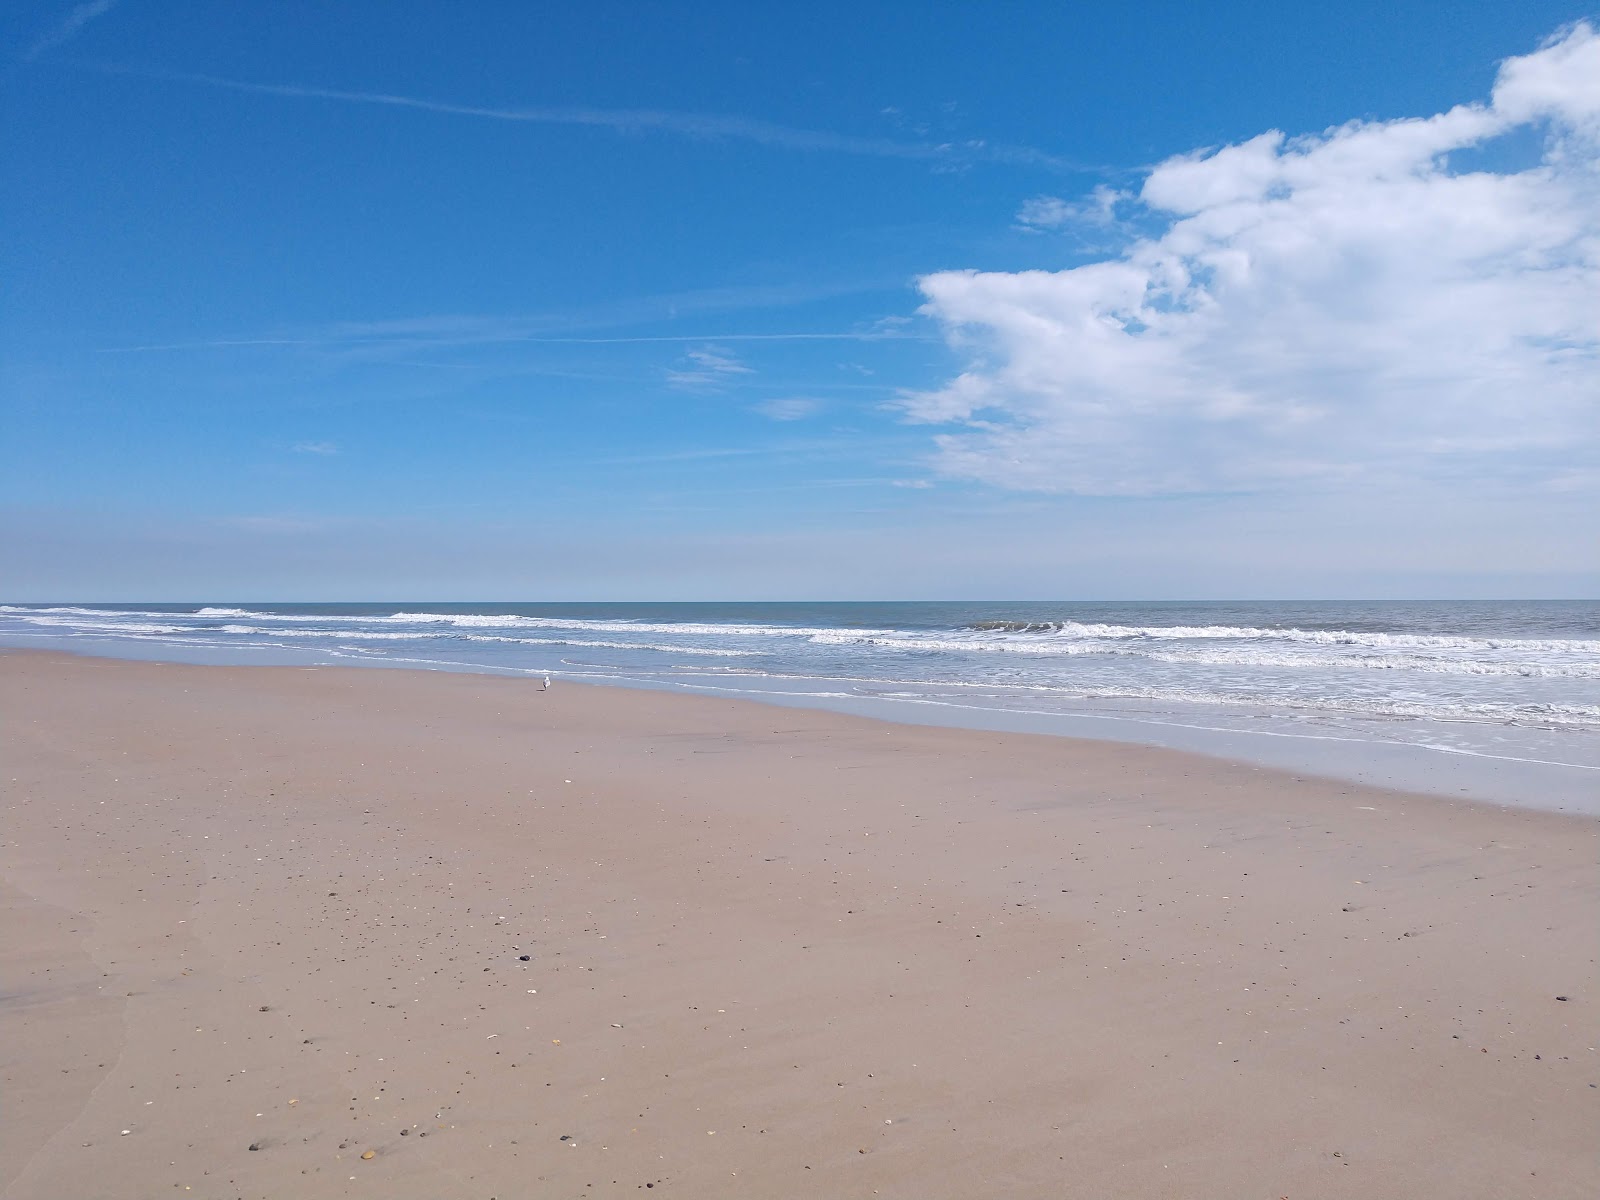 Zdjęcie Sea Haven beach z powierzchnią jasny piasek